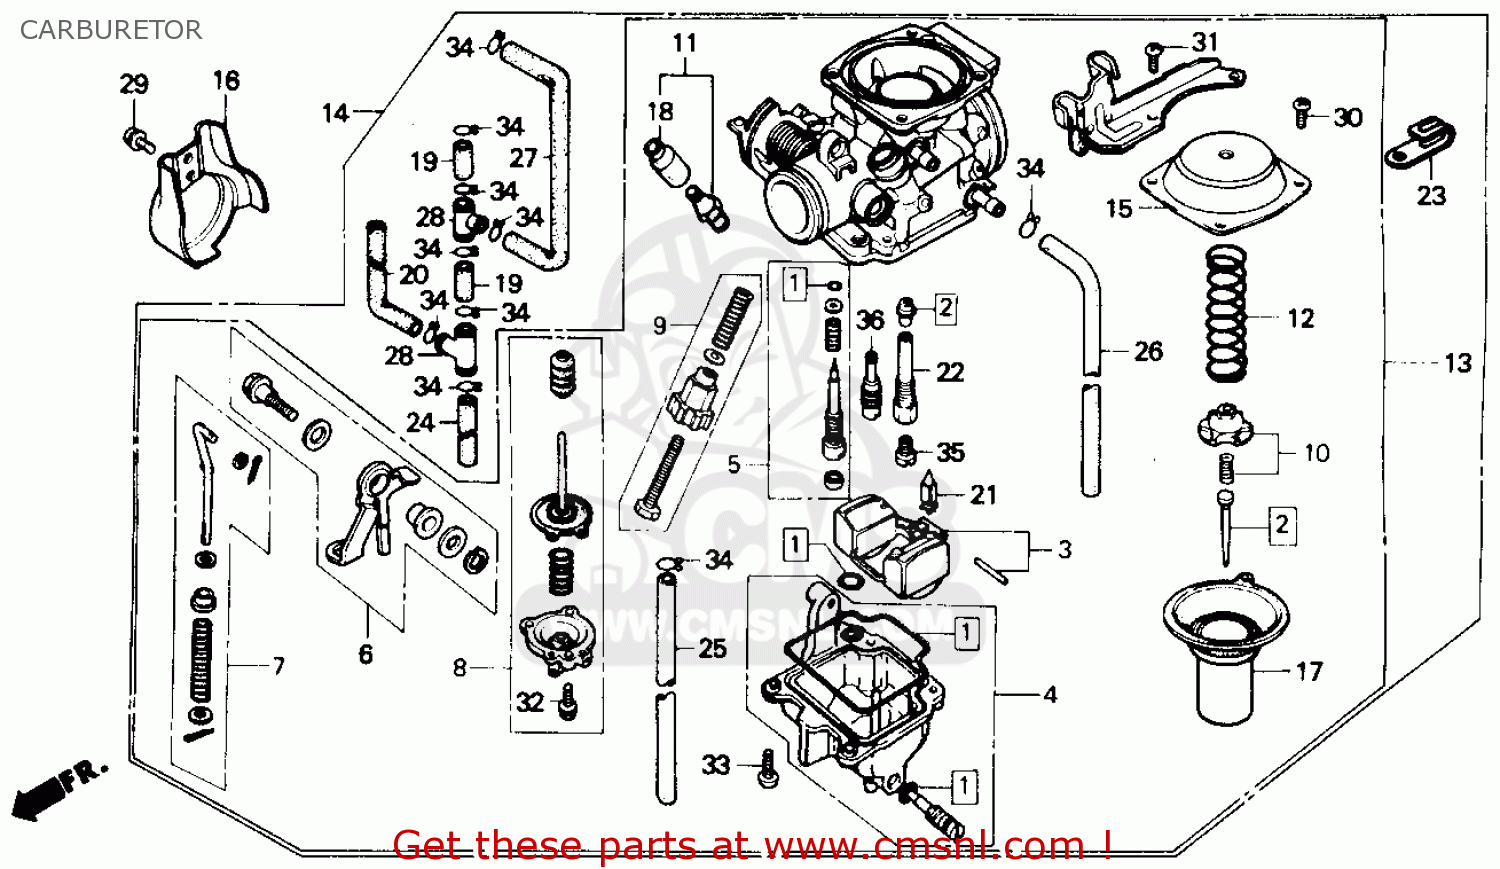 1985 Honda rebel carburetor diagram